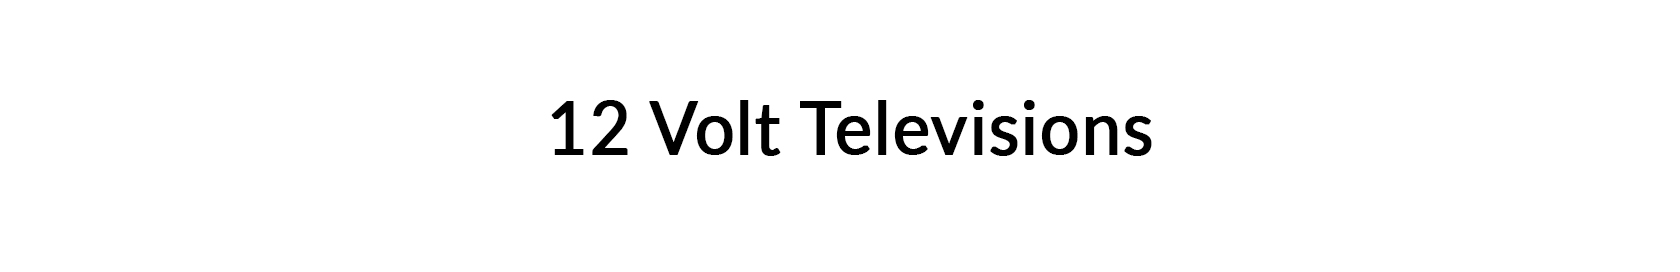 12 Volt Televisions